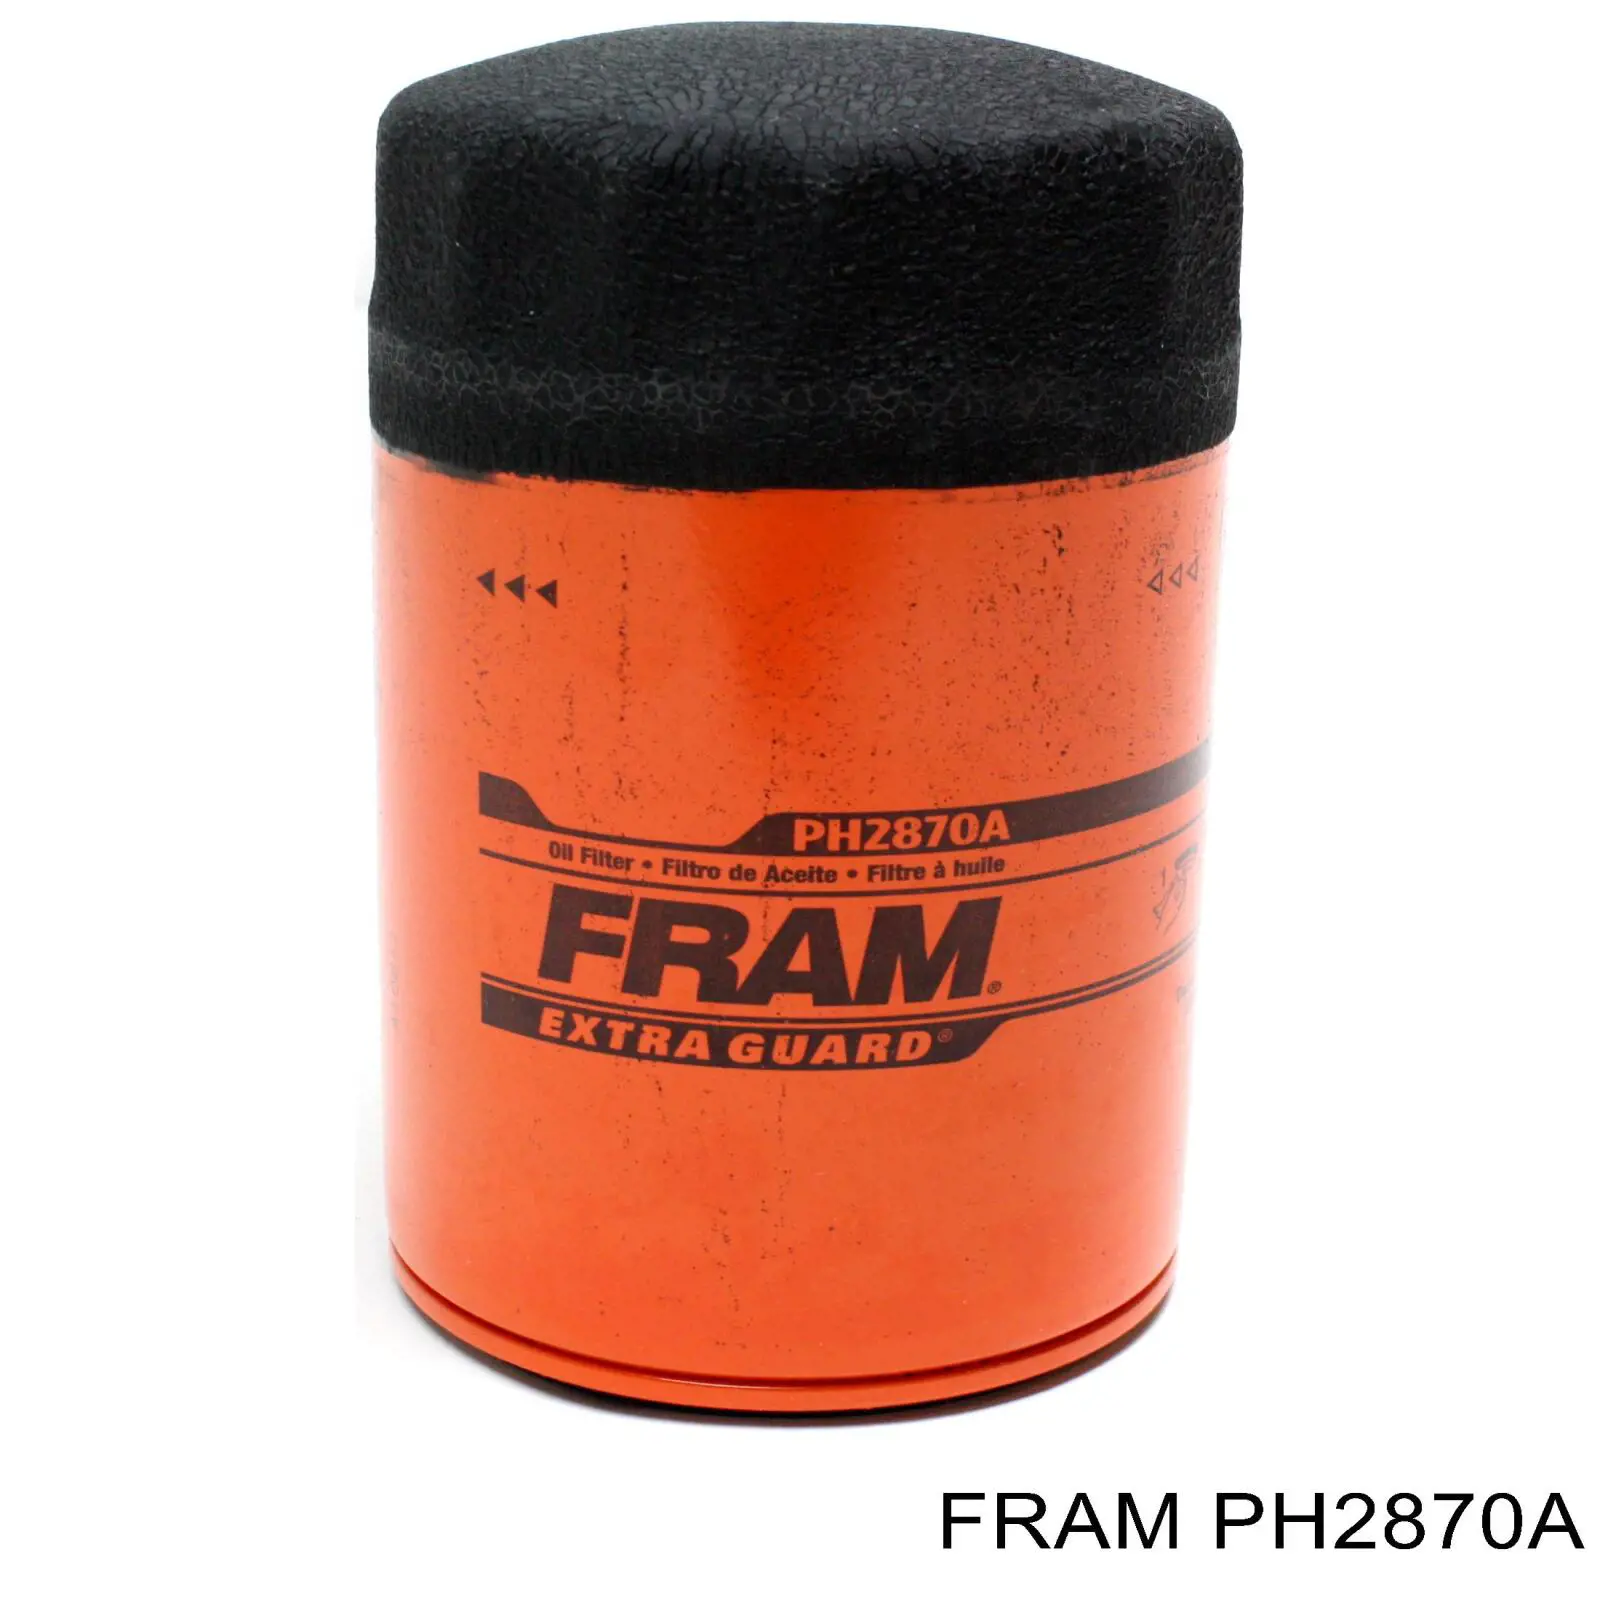 PH2870A Fram filtro de aceite